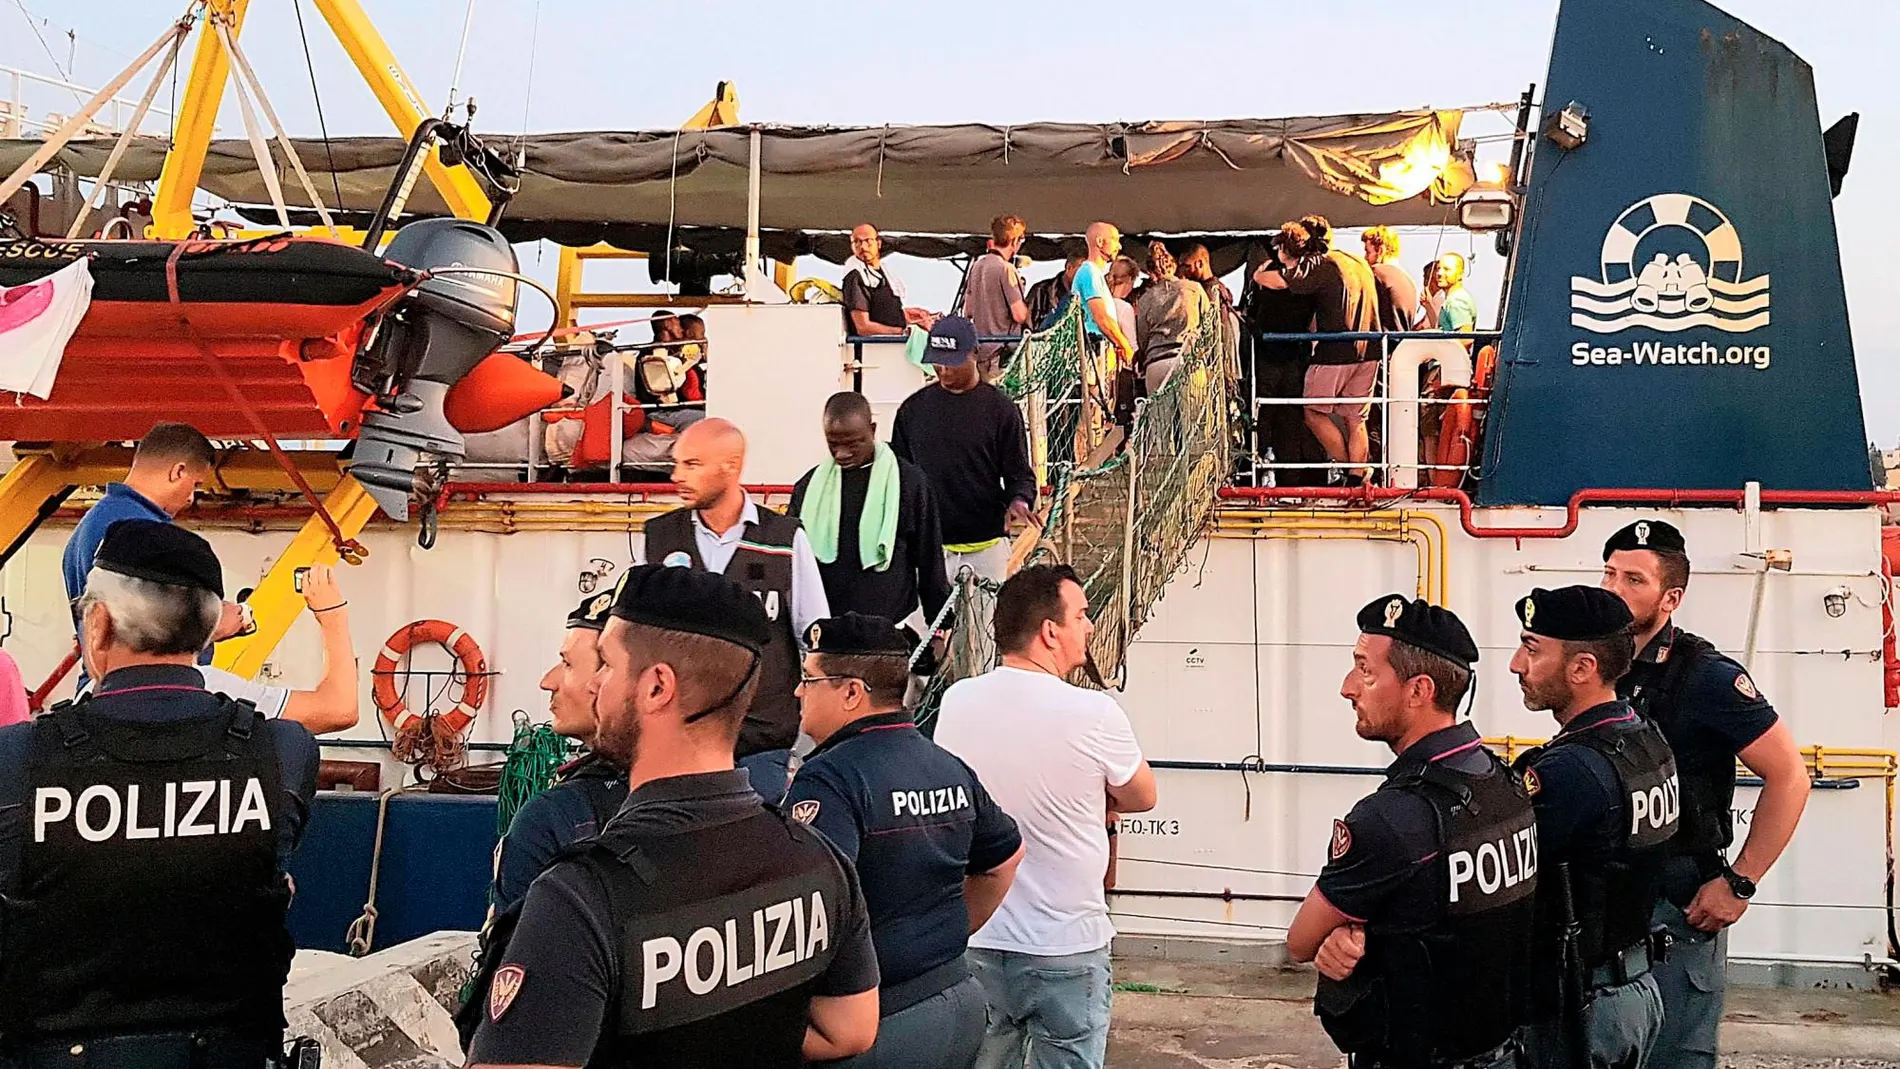 El "Sea Watch"atracó sin permiso en Lampedusa/Efe